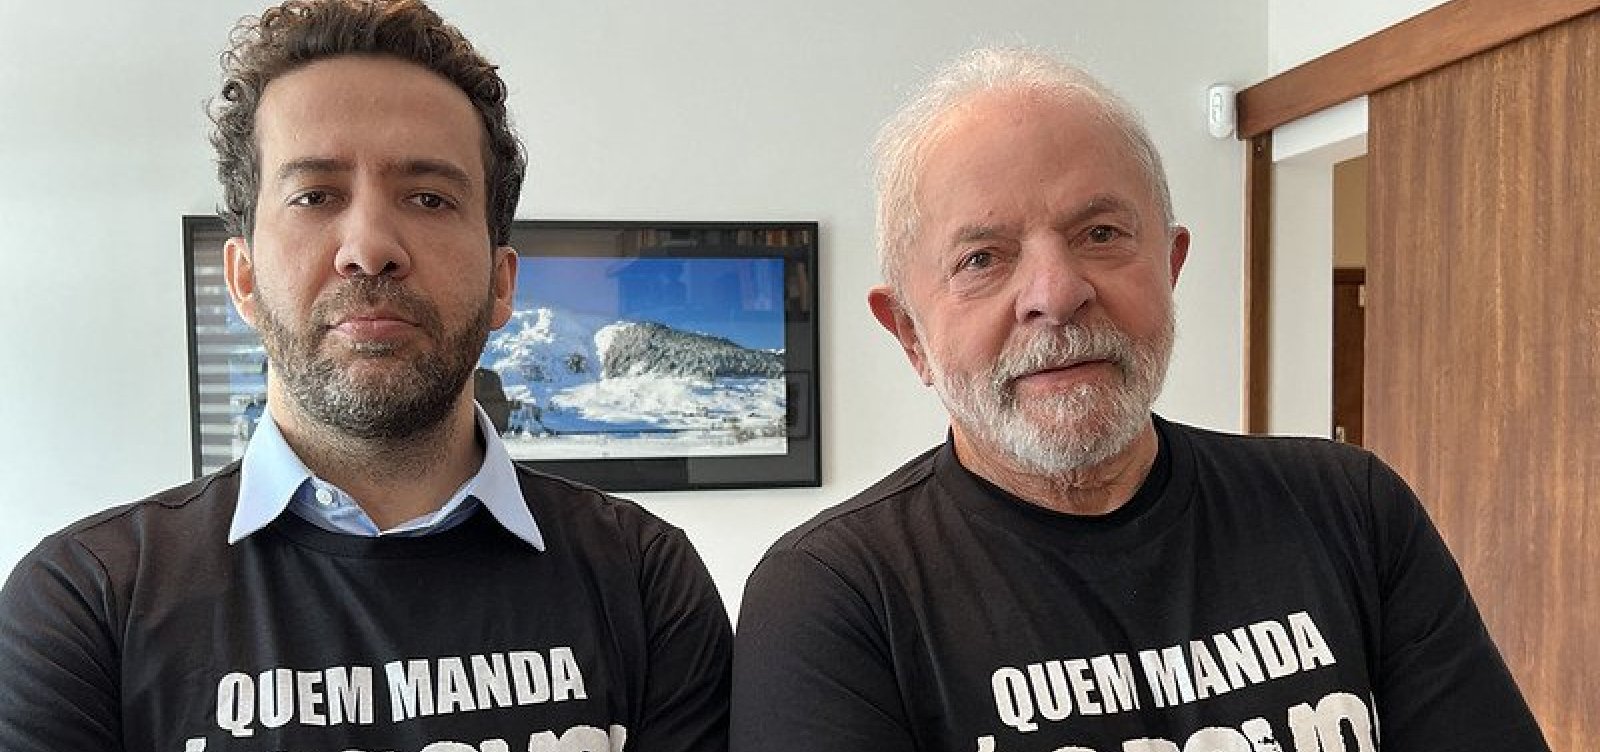 Posts de Lula sobre auxílio têm três vezes mais engajamento do que os de bolsonaristas